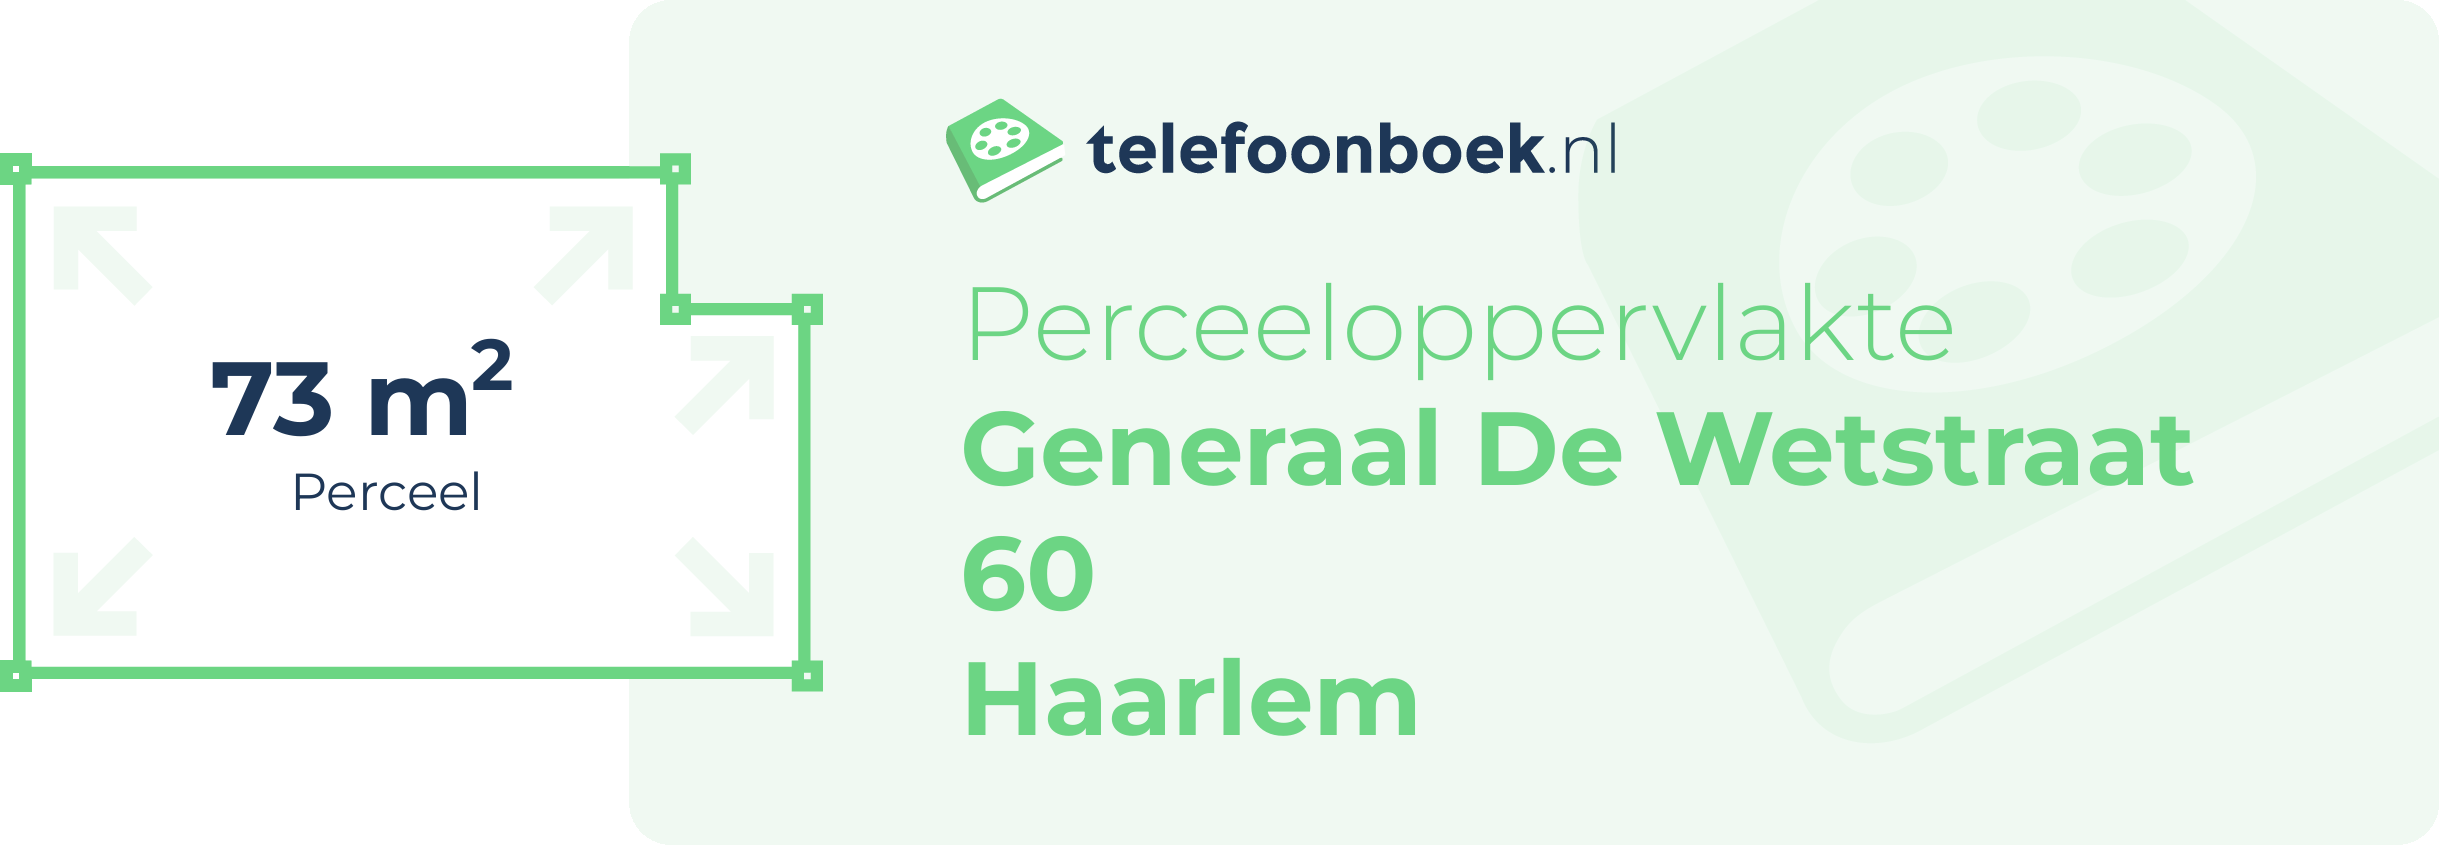 Perceeloppervlakte Generaal De Wetstraat 60 Haarlem